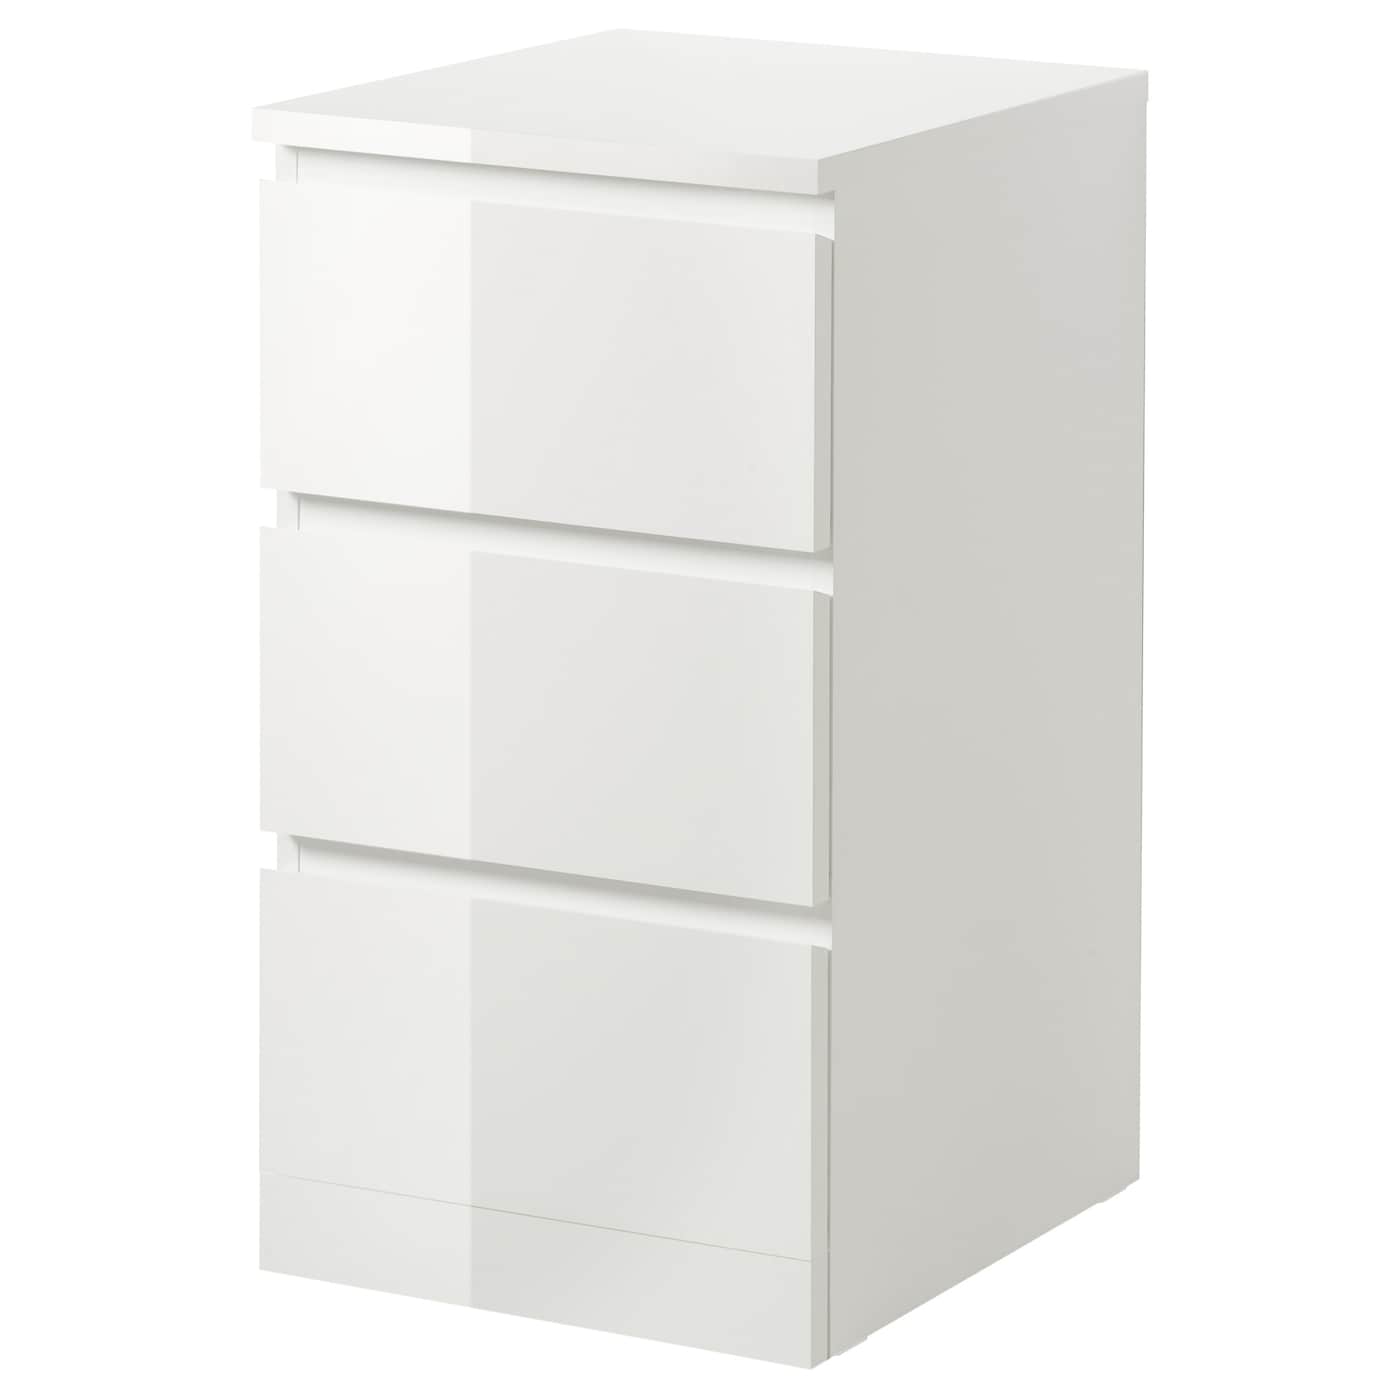 MALM - komoda, 3 szuflady połysk biały